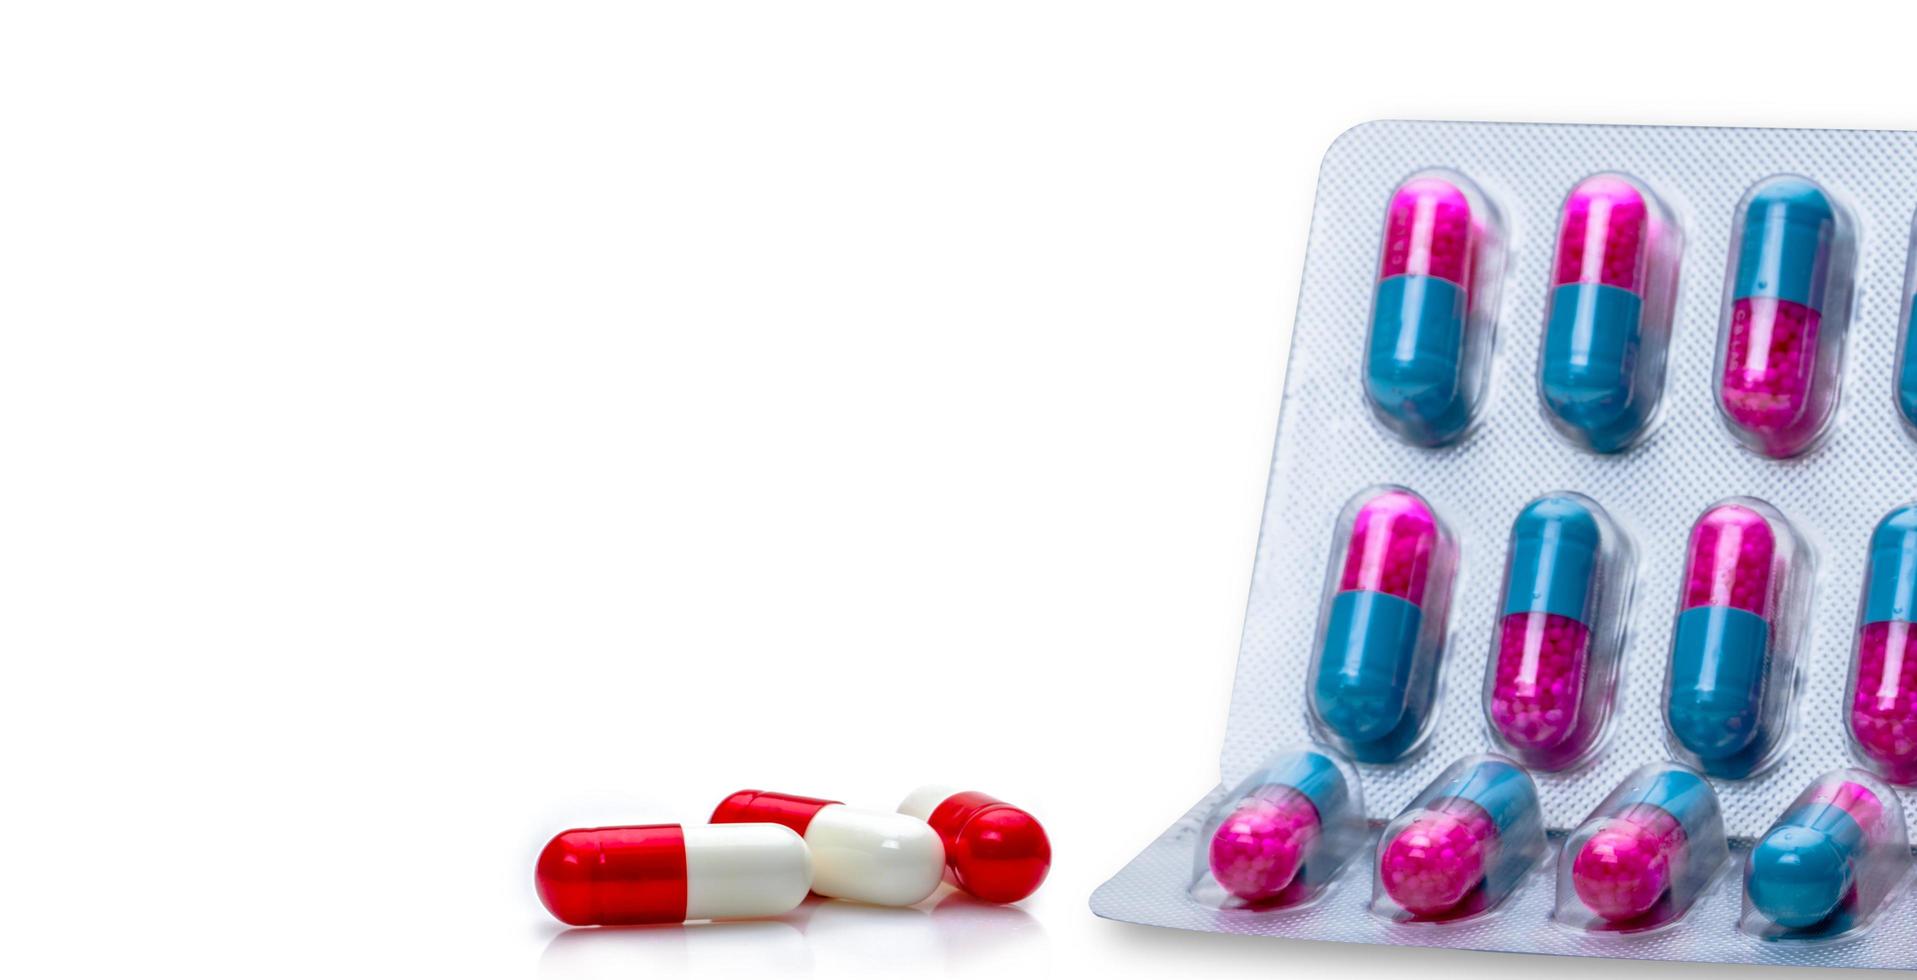 pilules de capsule antibiotique rouge-blanc et granules antifongiques rose-bleu dans des pilules de capsule sous blister sur fond blanc antibiotiques résistance aux médicaments et utilisation de médicaments antimicrobiens avec raisonnable. photo